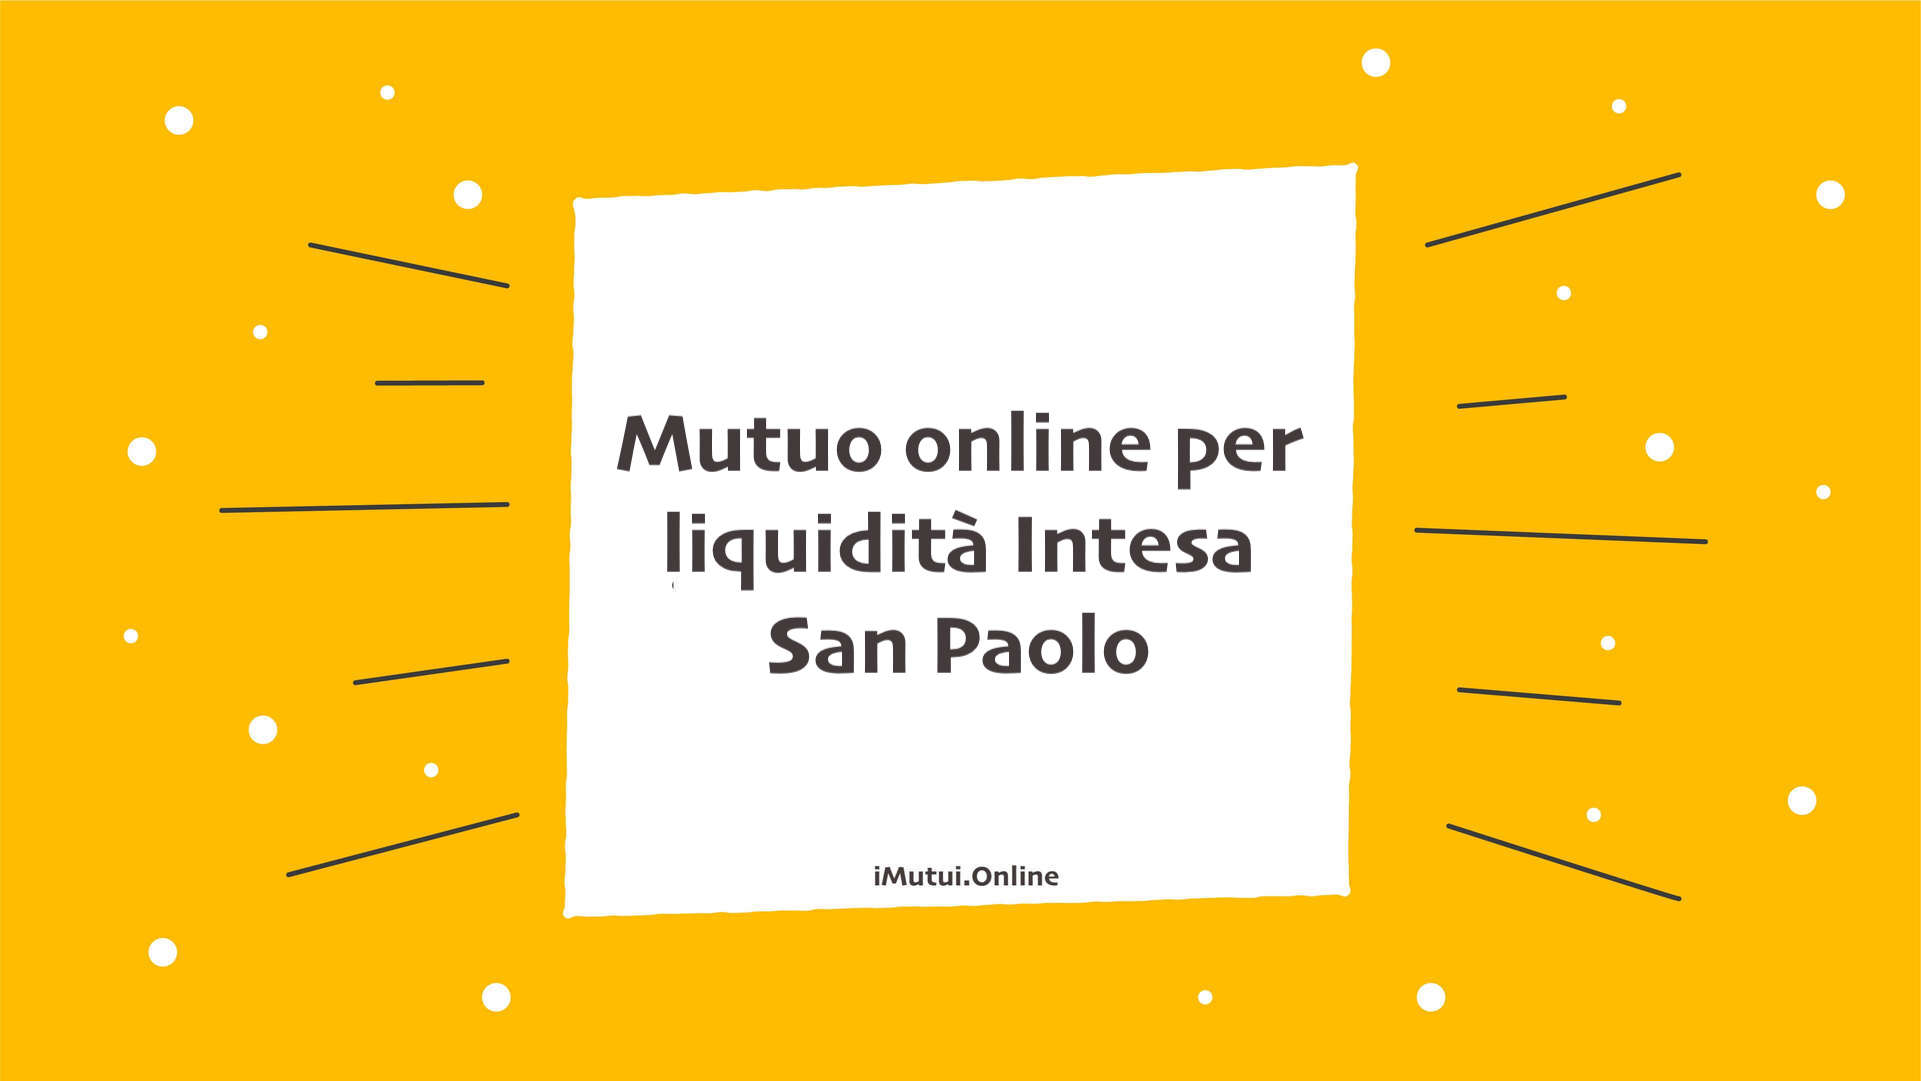 Mutuo online per liquidità Intesa San Paolo